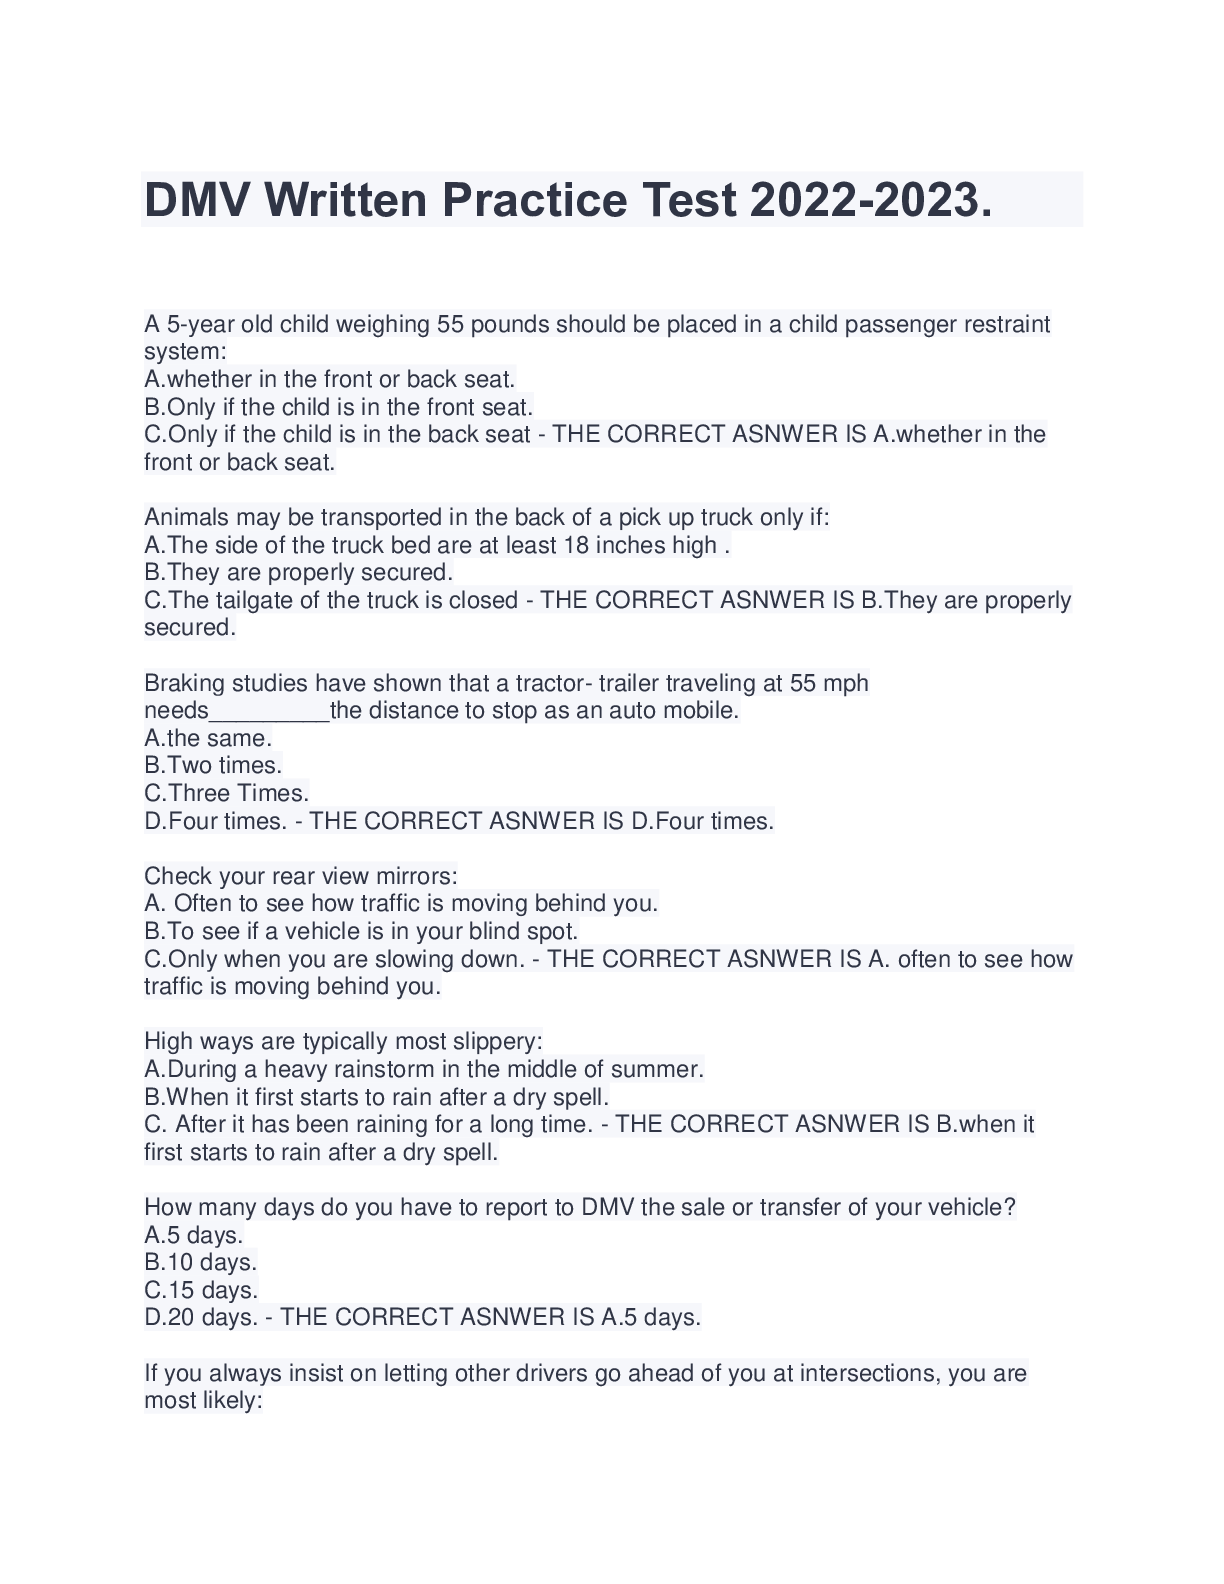 DMV Written Practice Test 2022 2023 